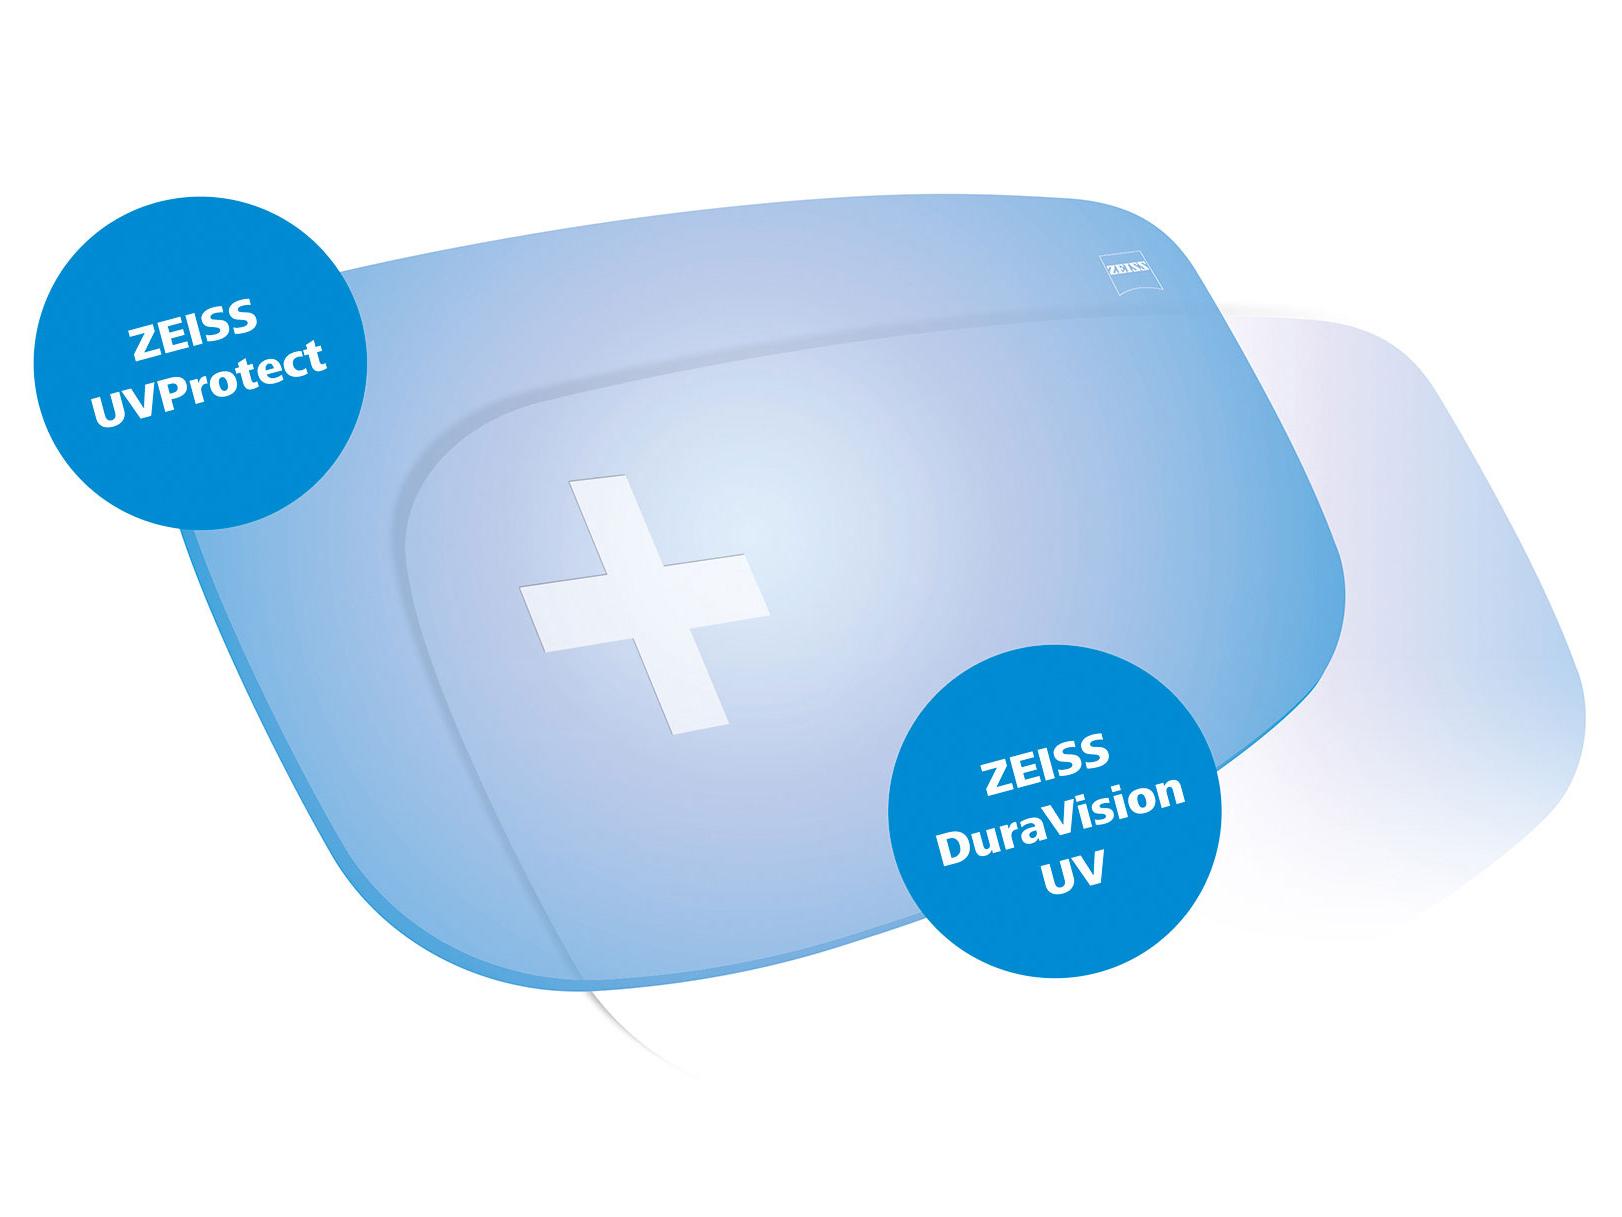 Todos los lentes ZEISS vienen de serie con protección UV desde cualquier ángulo. El gráfico muestra dos soluciones.